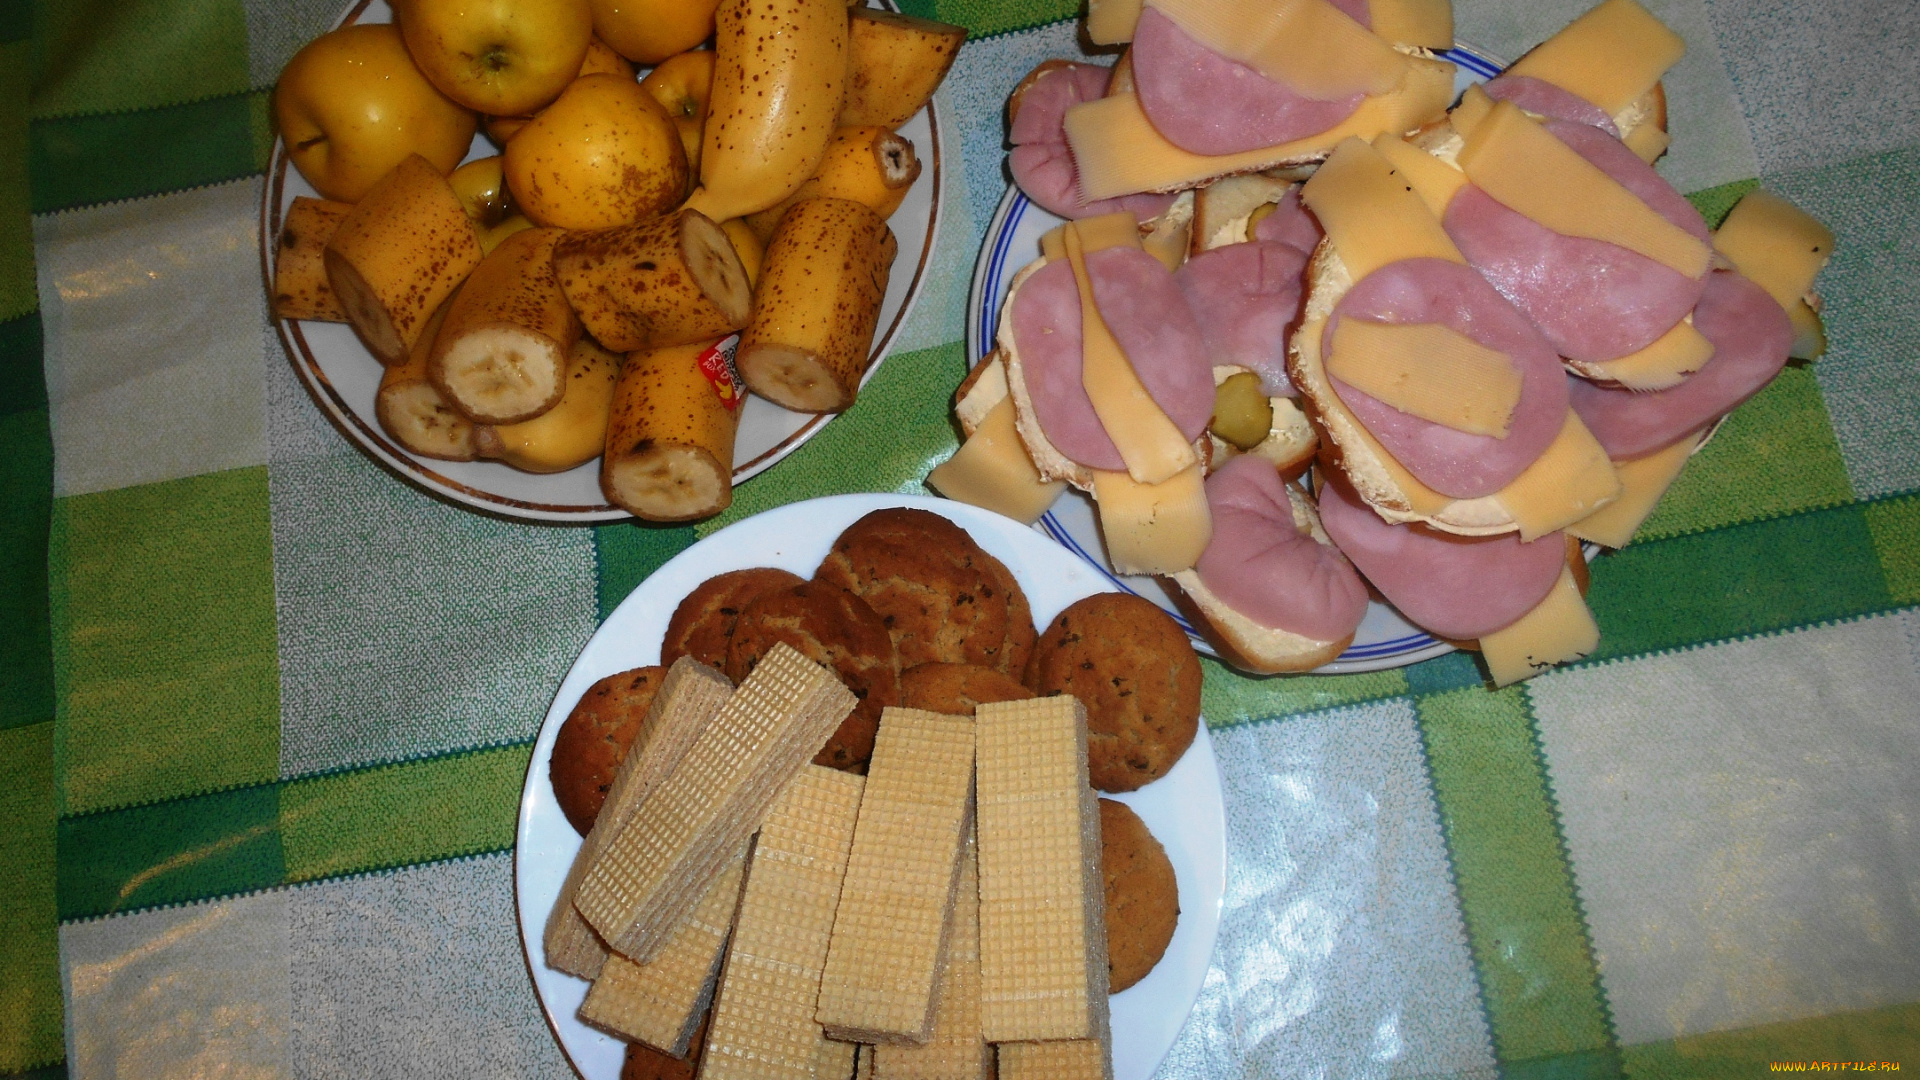 еда, бутерброды, , гамбургеры, , канапе, вафли, печенье, бананы, яблоки, сыр, хлеб, колбаса